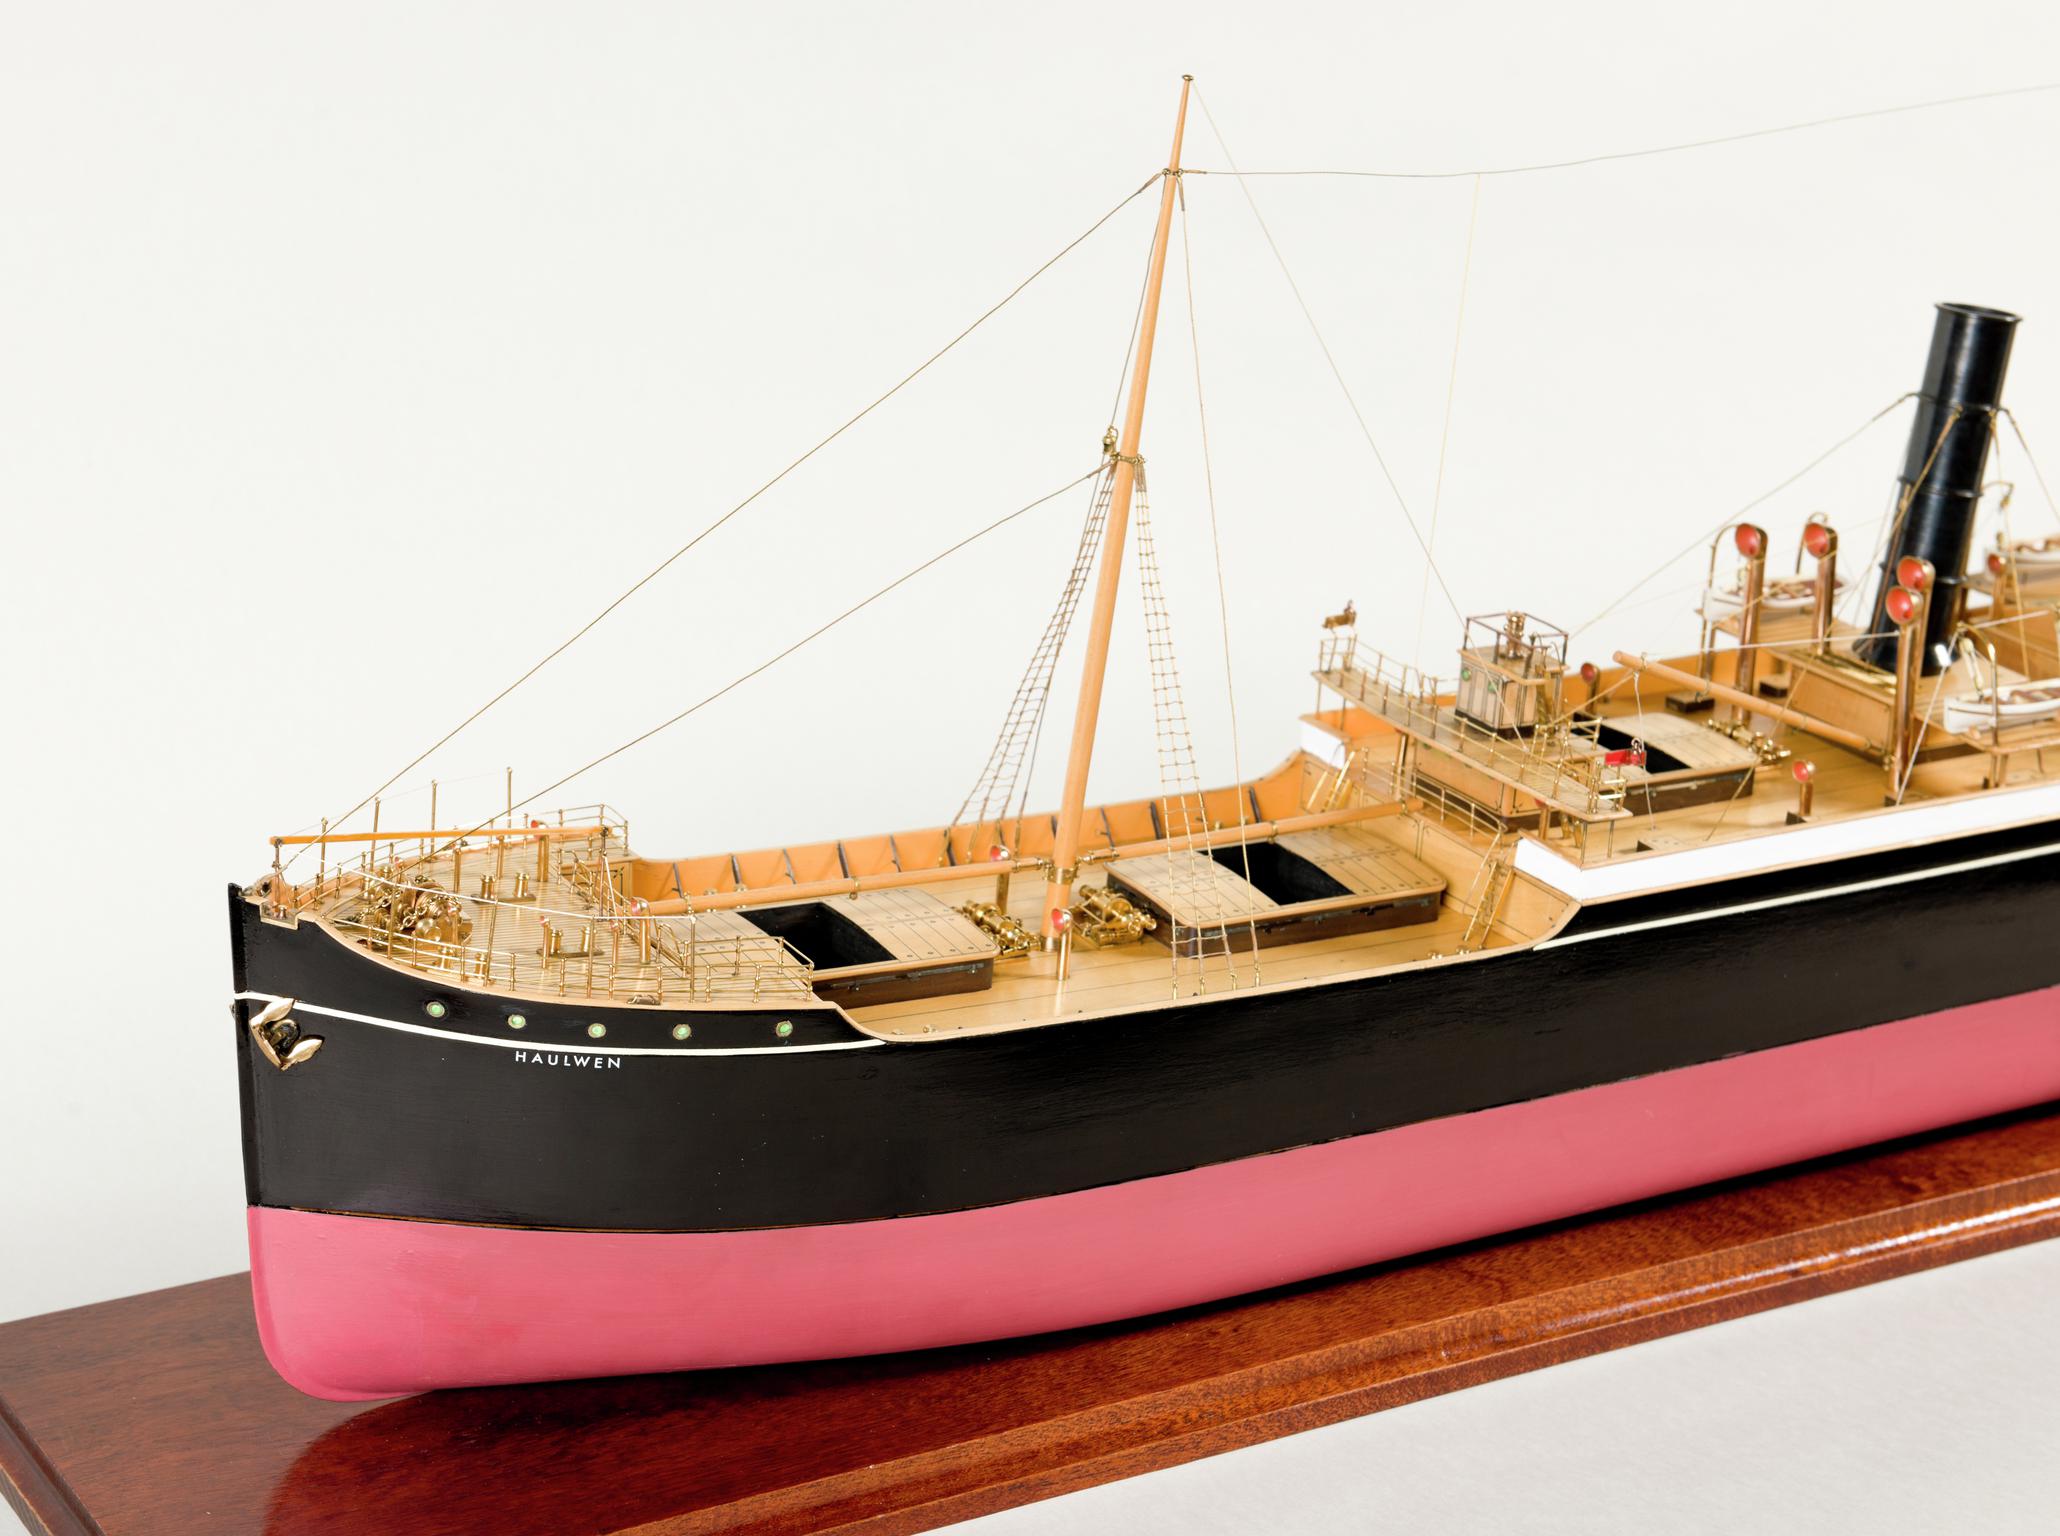 S.S. HAULWEN, full hull ship model